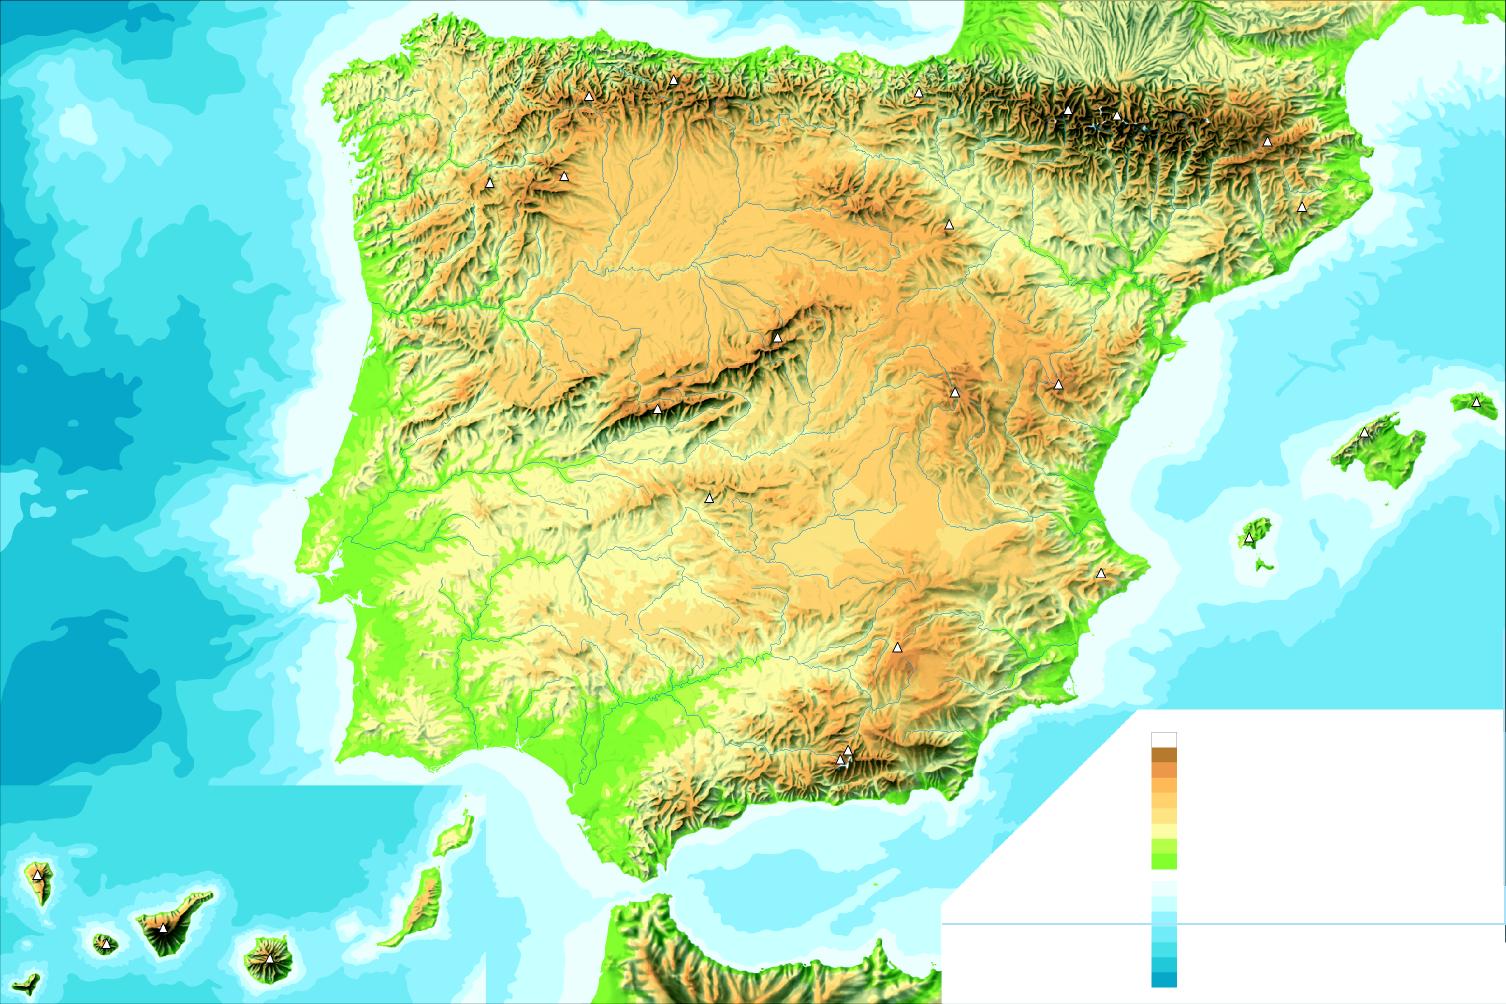 http://3.bp.blogspot.com/-P6arq4-ZIss/TceuYO7wfdI/AAAAAAAAAFA/Uhreo37eHx4/s1600/Mapa-fisico-de-Espana-mudo-4092.jpeg